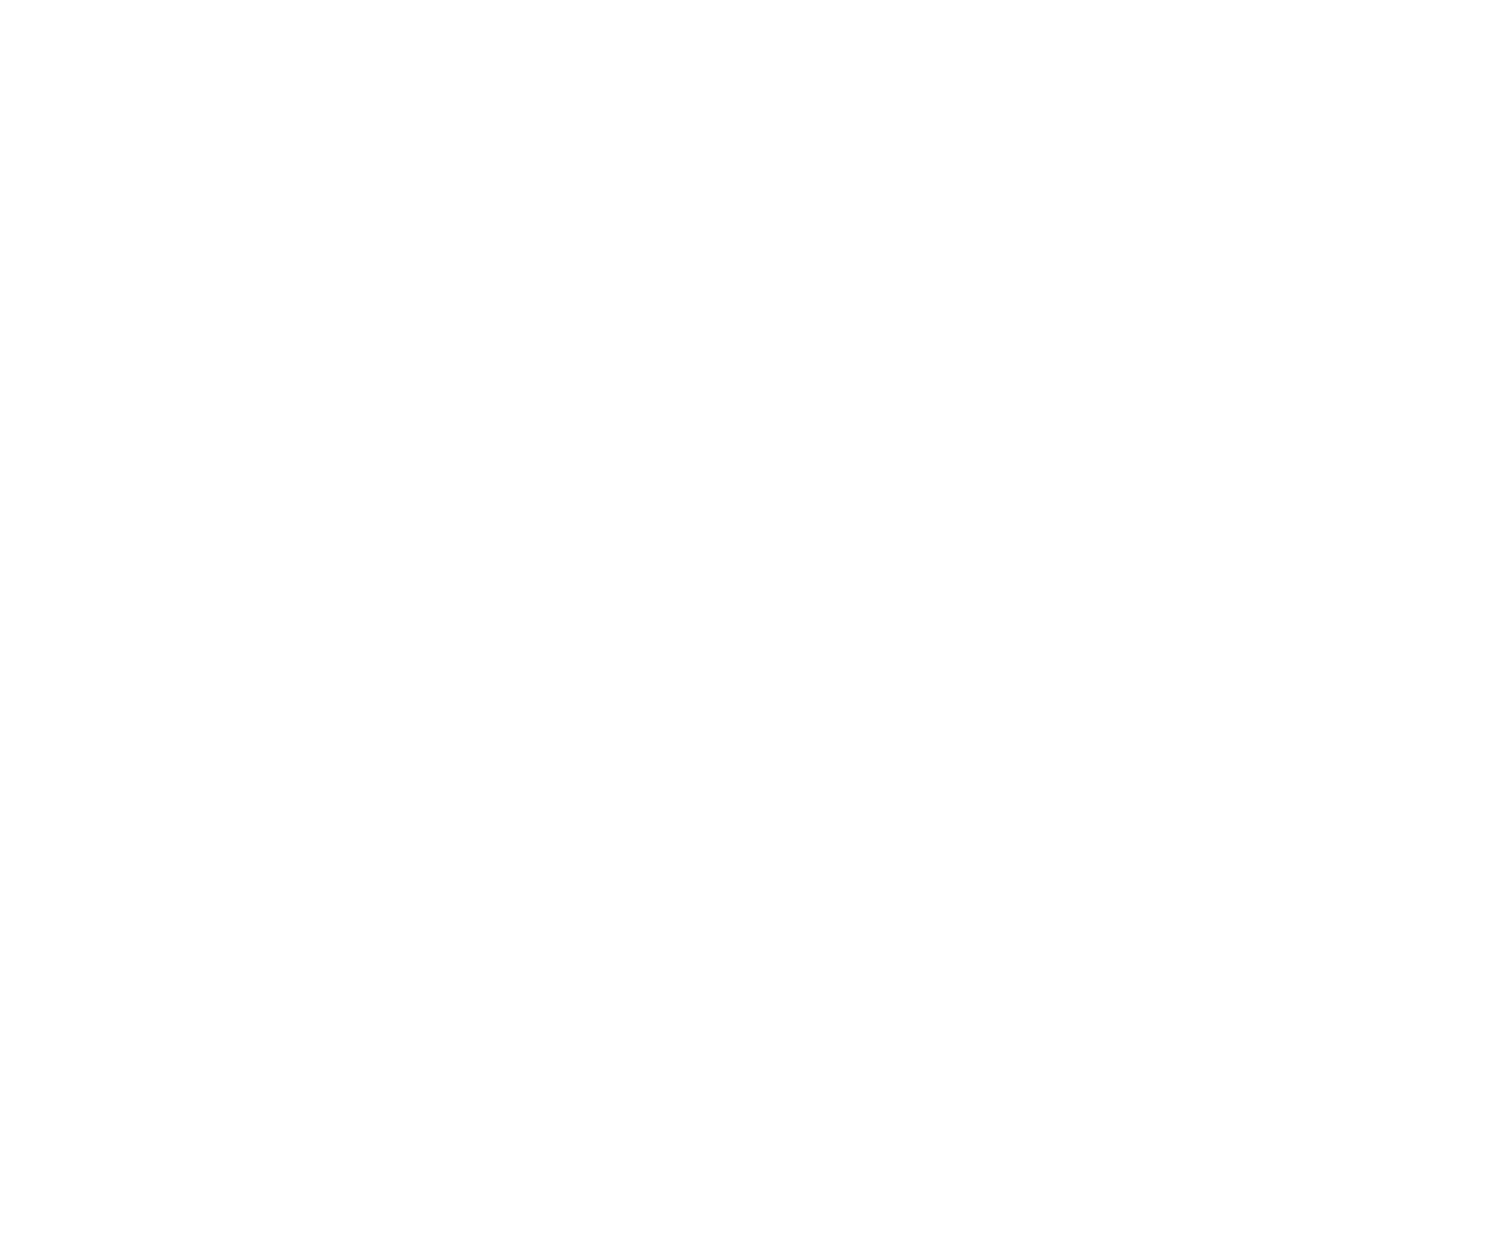 Cabo Taco Baja Grill